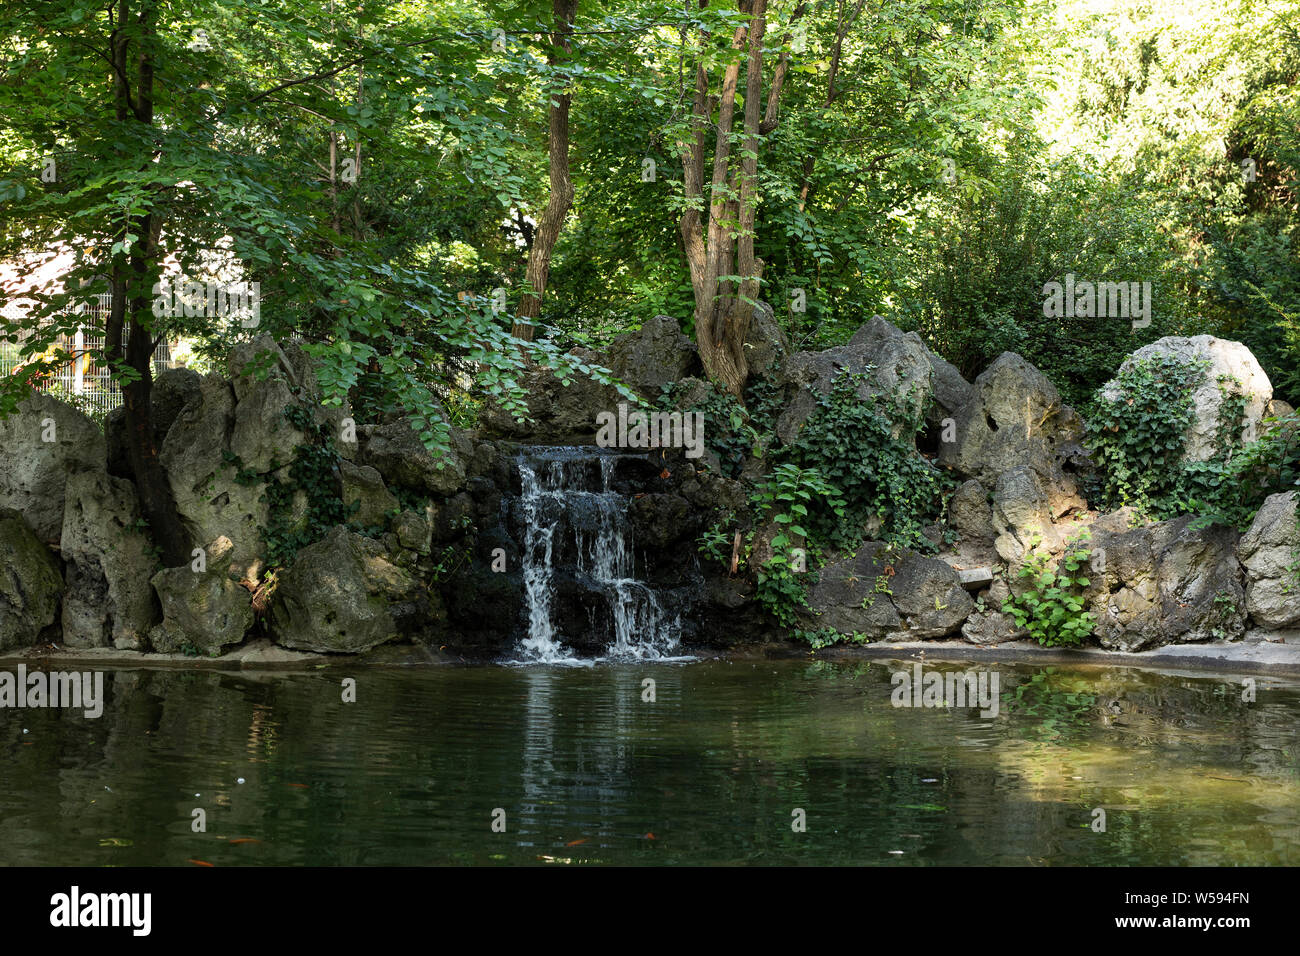 A pond with a small waterfall in the park (Liechtensteinpark) behind the Liechtenstein Garden Palace in Vienna, Austria. Stock Photo